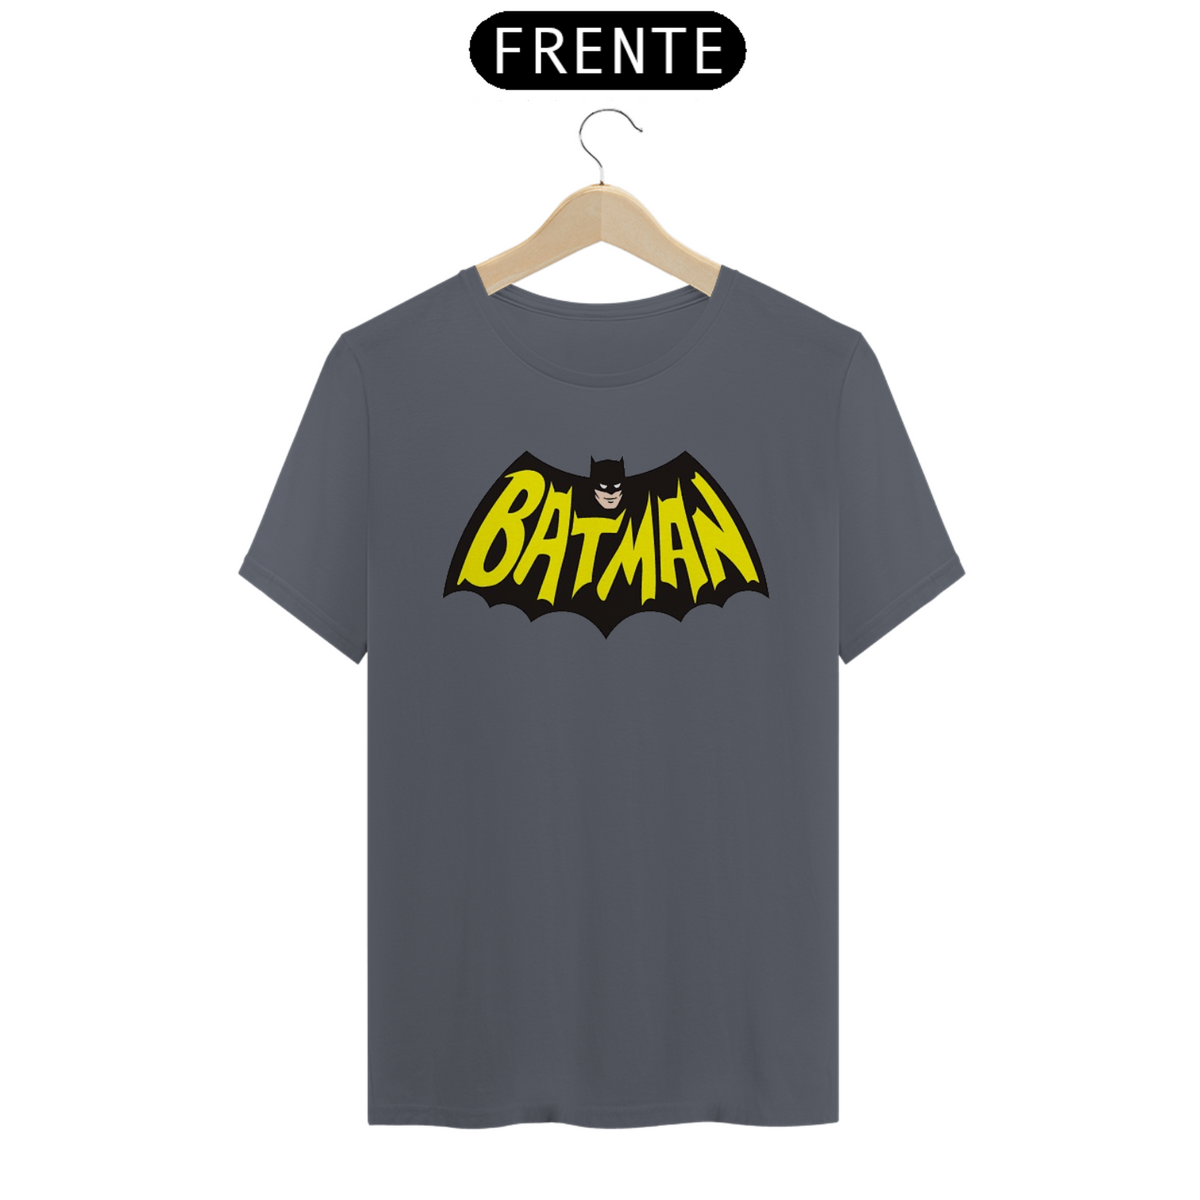 Nome do produto: Batman retrô